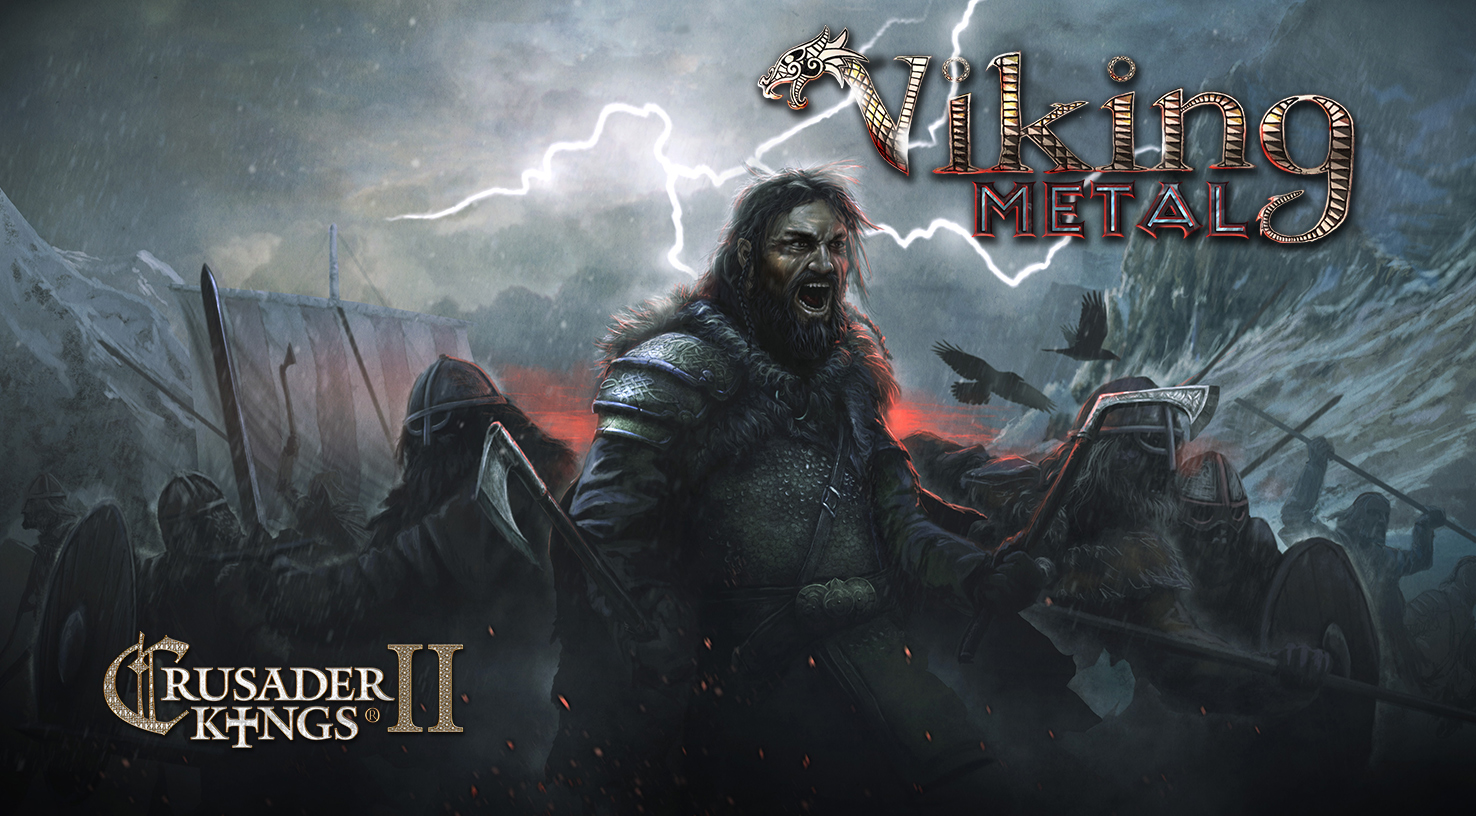 Crusader Kings II: Viking Metal screenshot